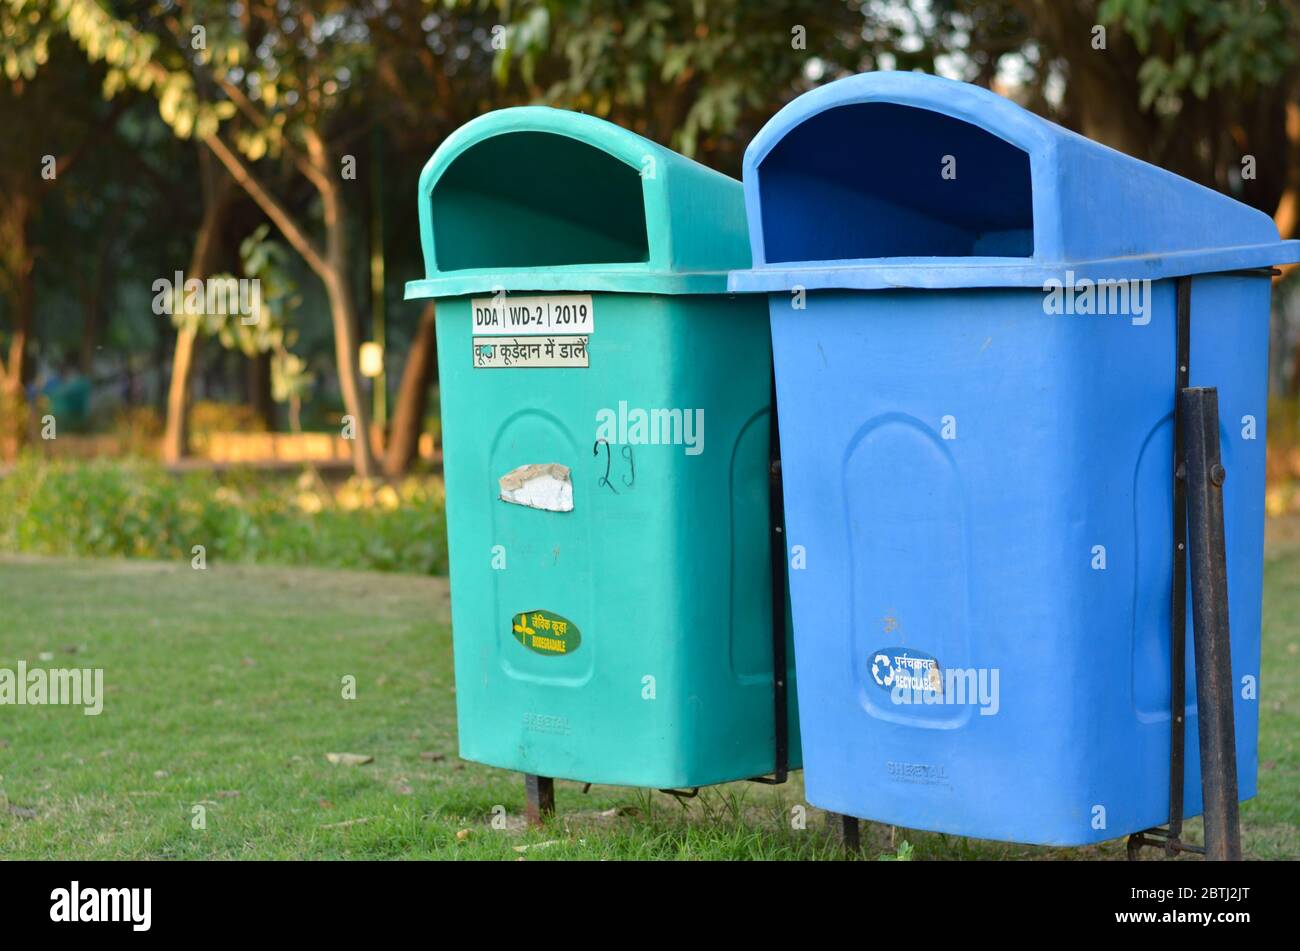 Le gouvernement de New Delhi a installé de nombreuses poubelles vertes et bleues dans toute la ville, celle-ci étant située dans un parc. Banque D'Images